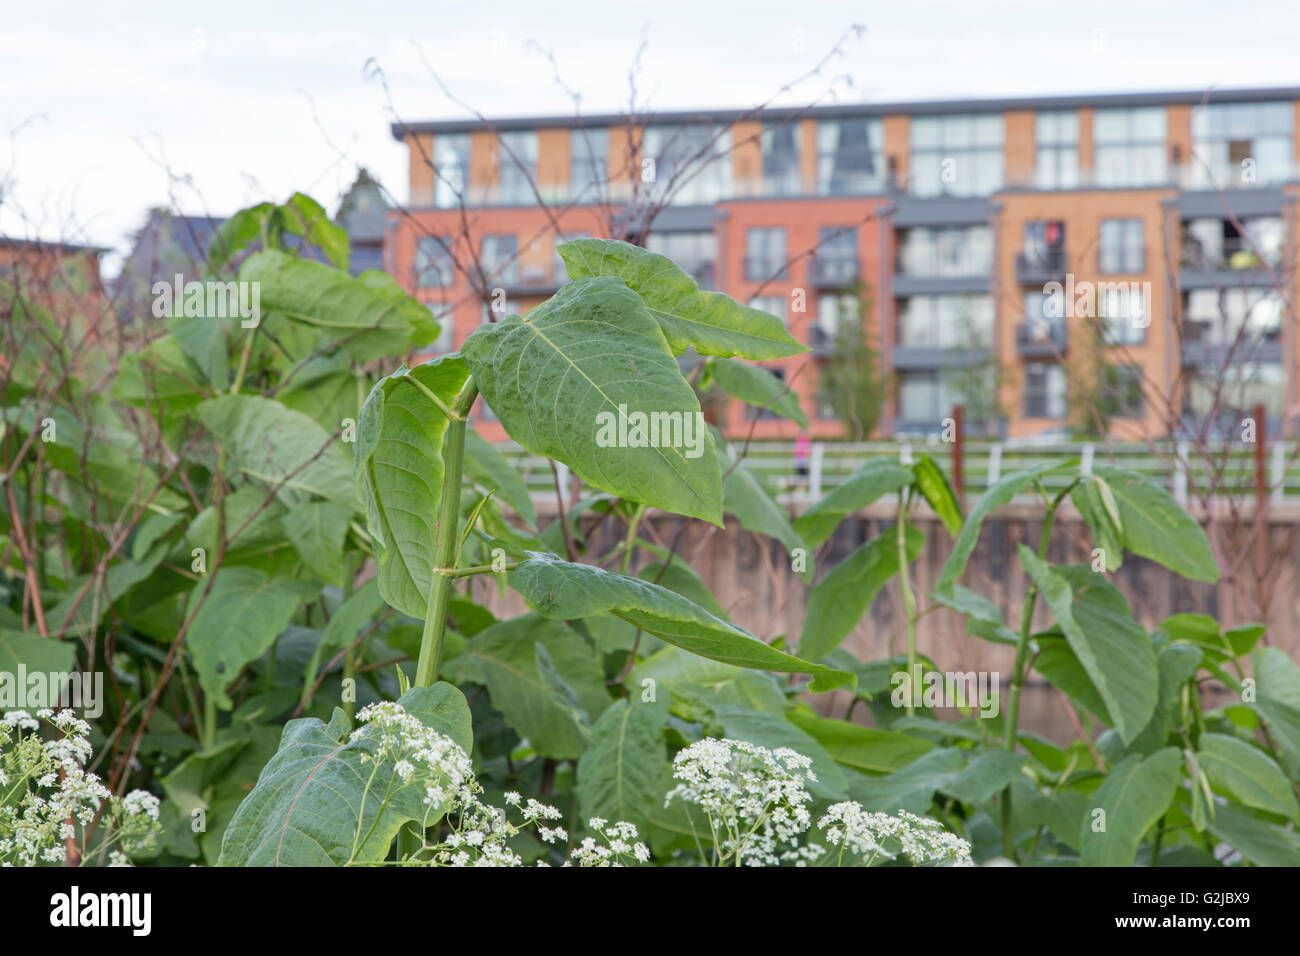 La renouée japonaise (Fallopia japonica) croissant dans un emplacement urbain, England, UK Banque D'Images